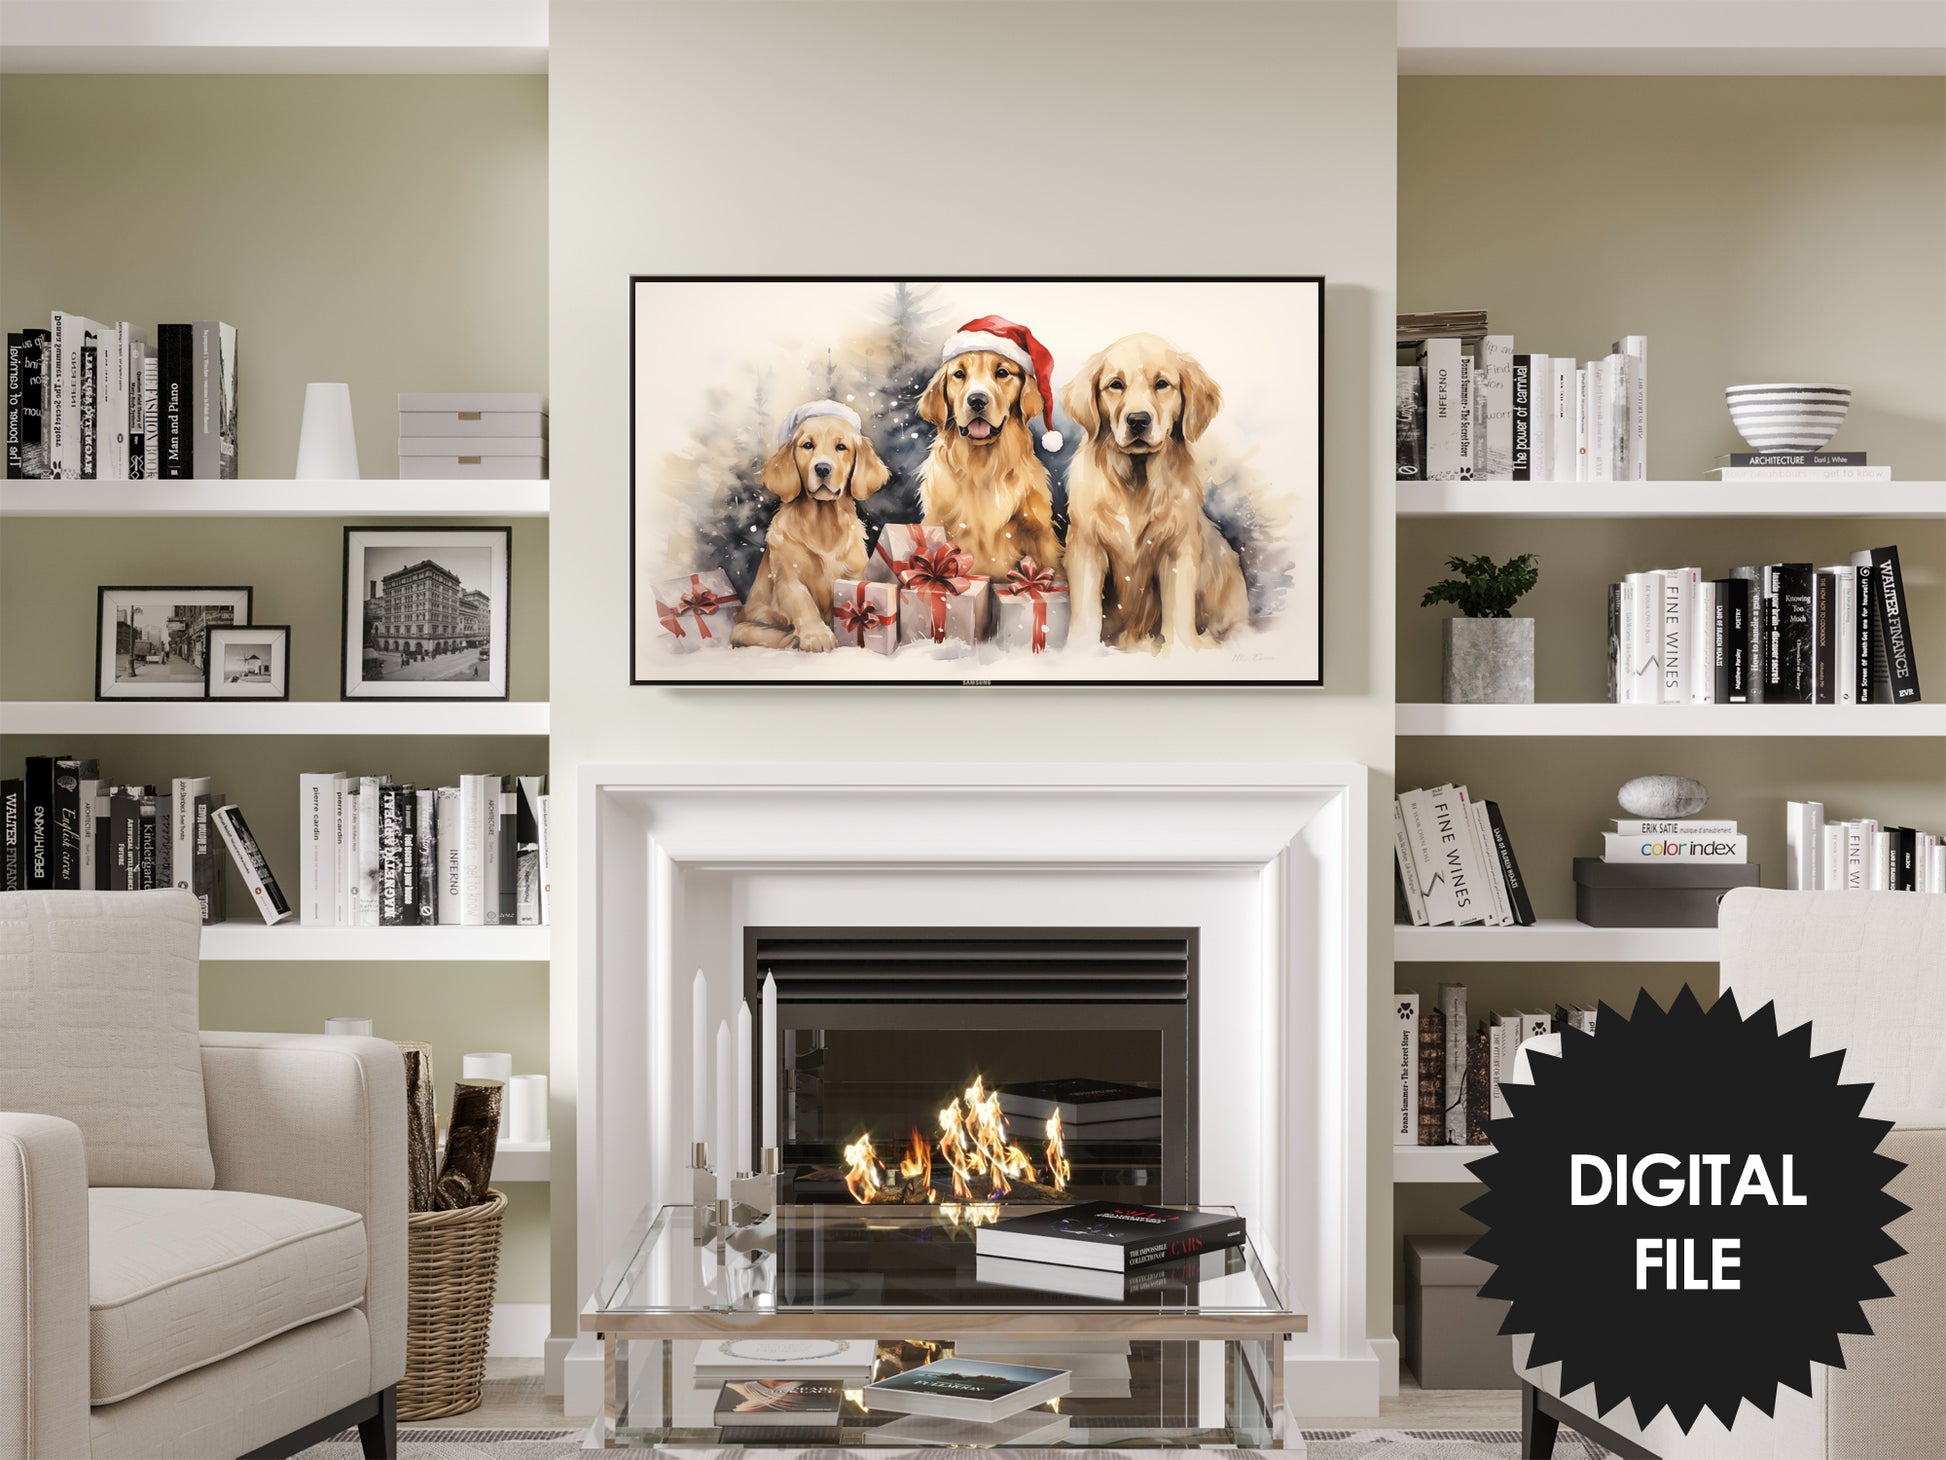 Christmas Frame TV Art Golden Retrievers Preview on Samsung Frame TV in modern living room